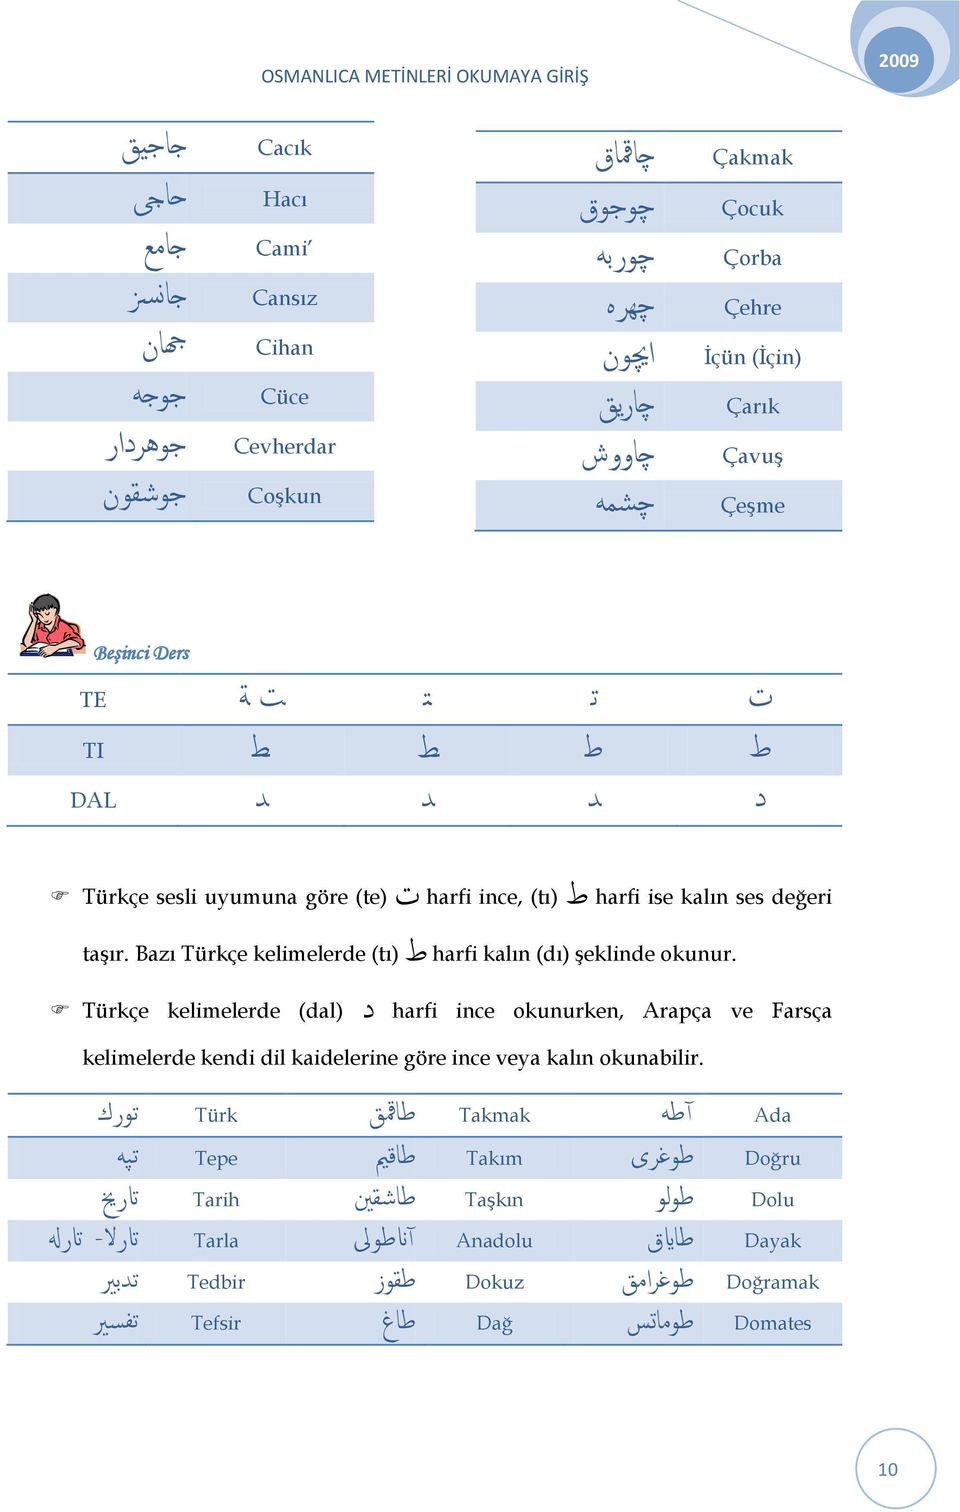 Bazı Türkçe kelimelerde (tı) ط harfi kalın (dı) şeklinde okunur.